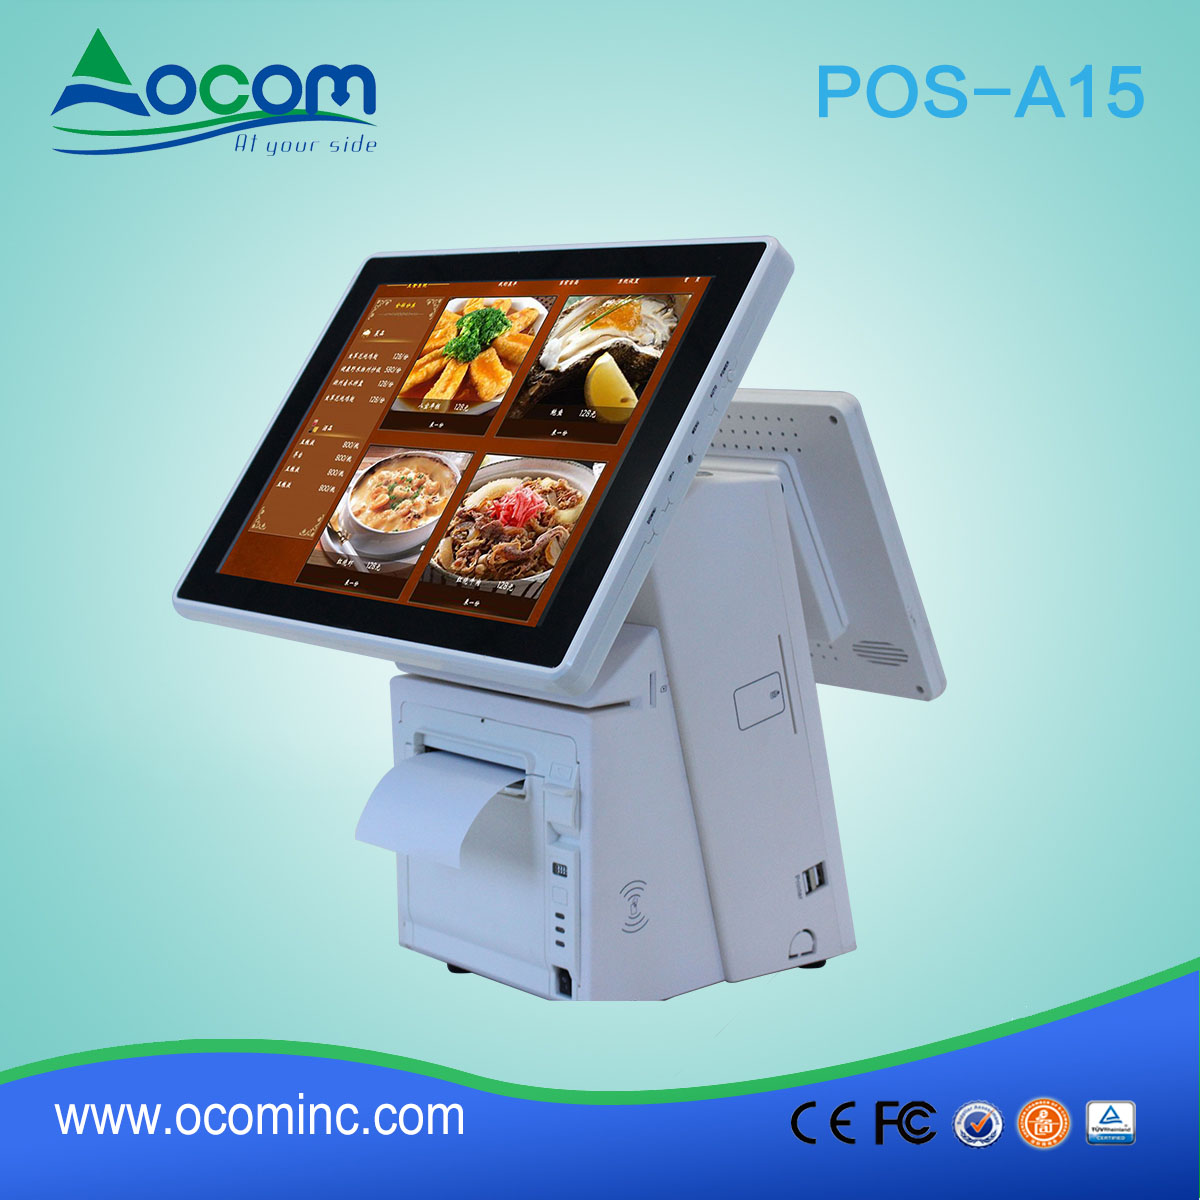 POS-A15---China fabriek gemaakt all-in-one-touch scherm pos terminal met thermische printer machine